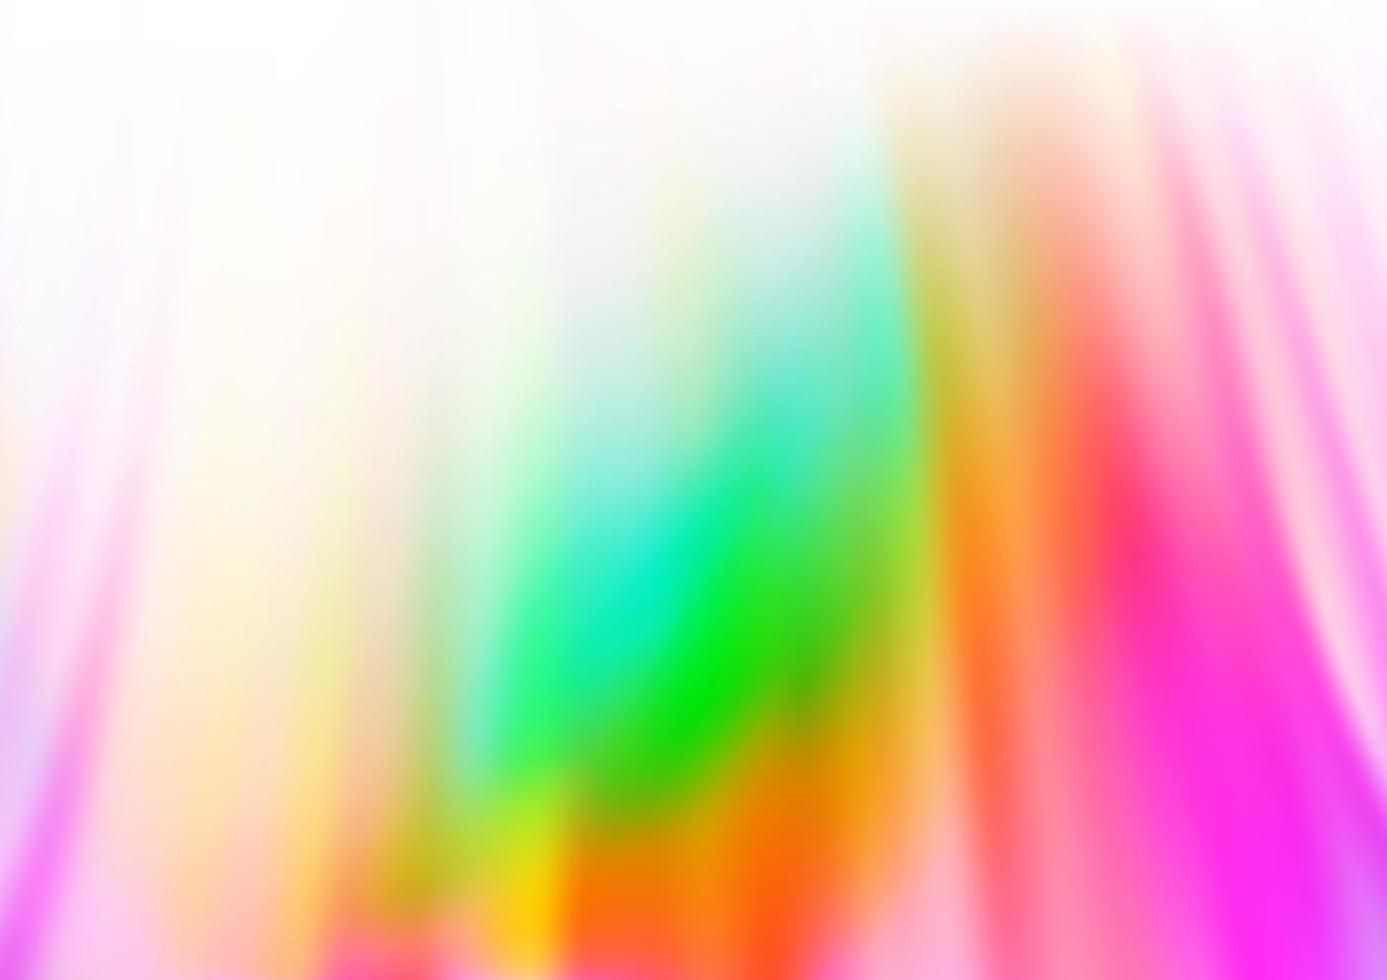 ljus mångfärgad, regnbågsvektormall med böjda band. vektor